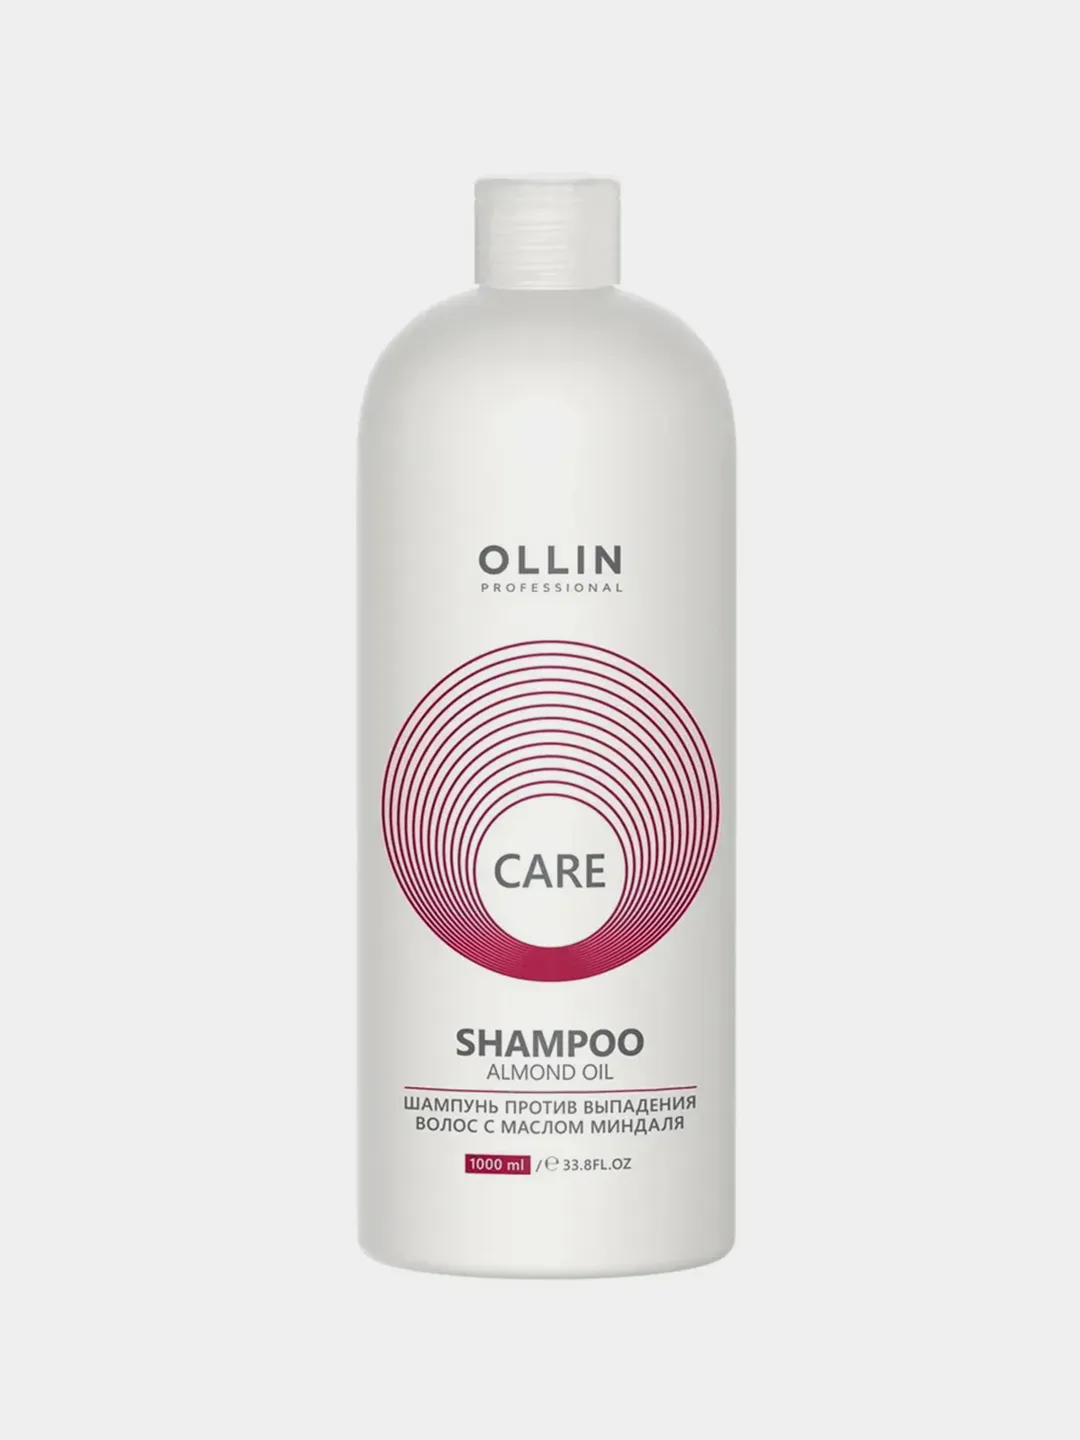 Шампунь против выпадения волос с маслом миндаля Ollin Professional, Care 1000 мл